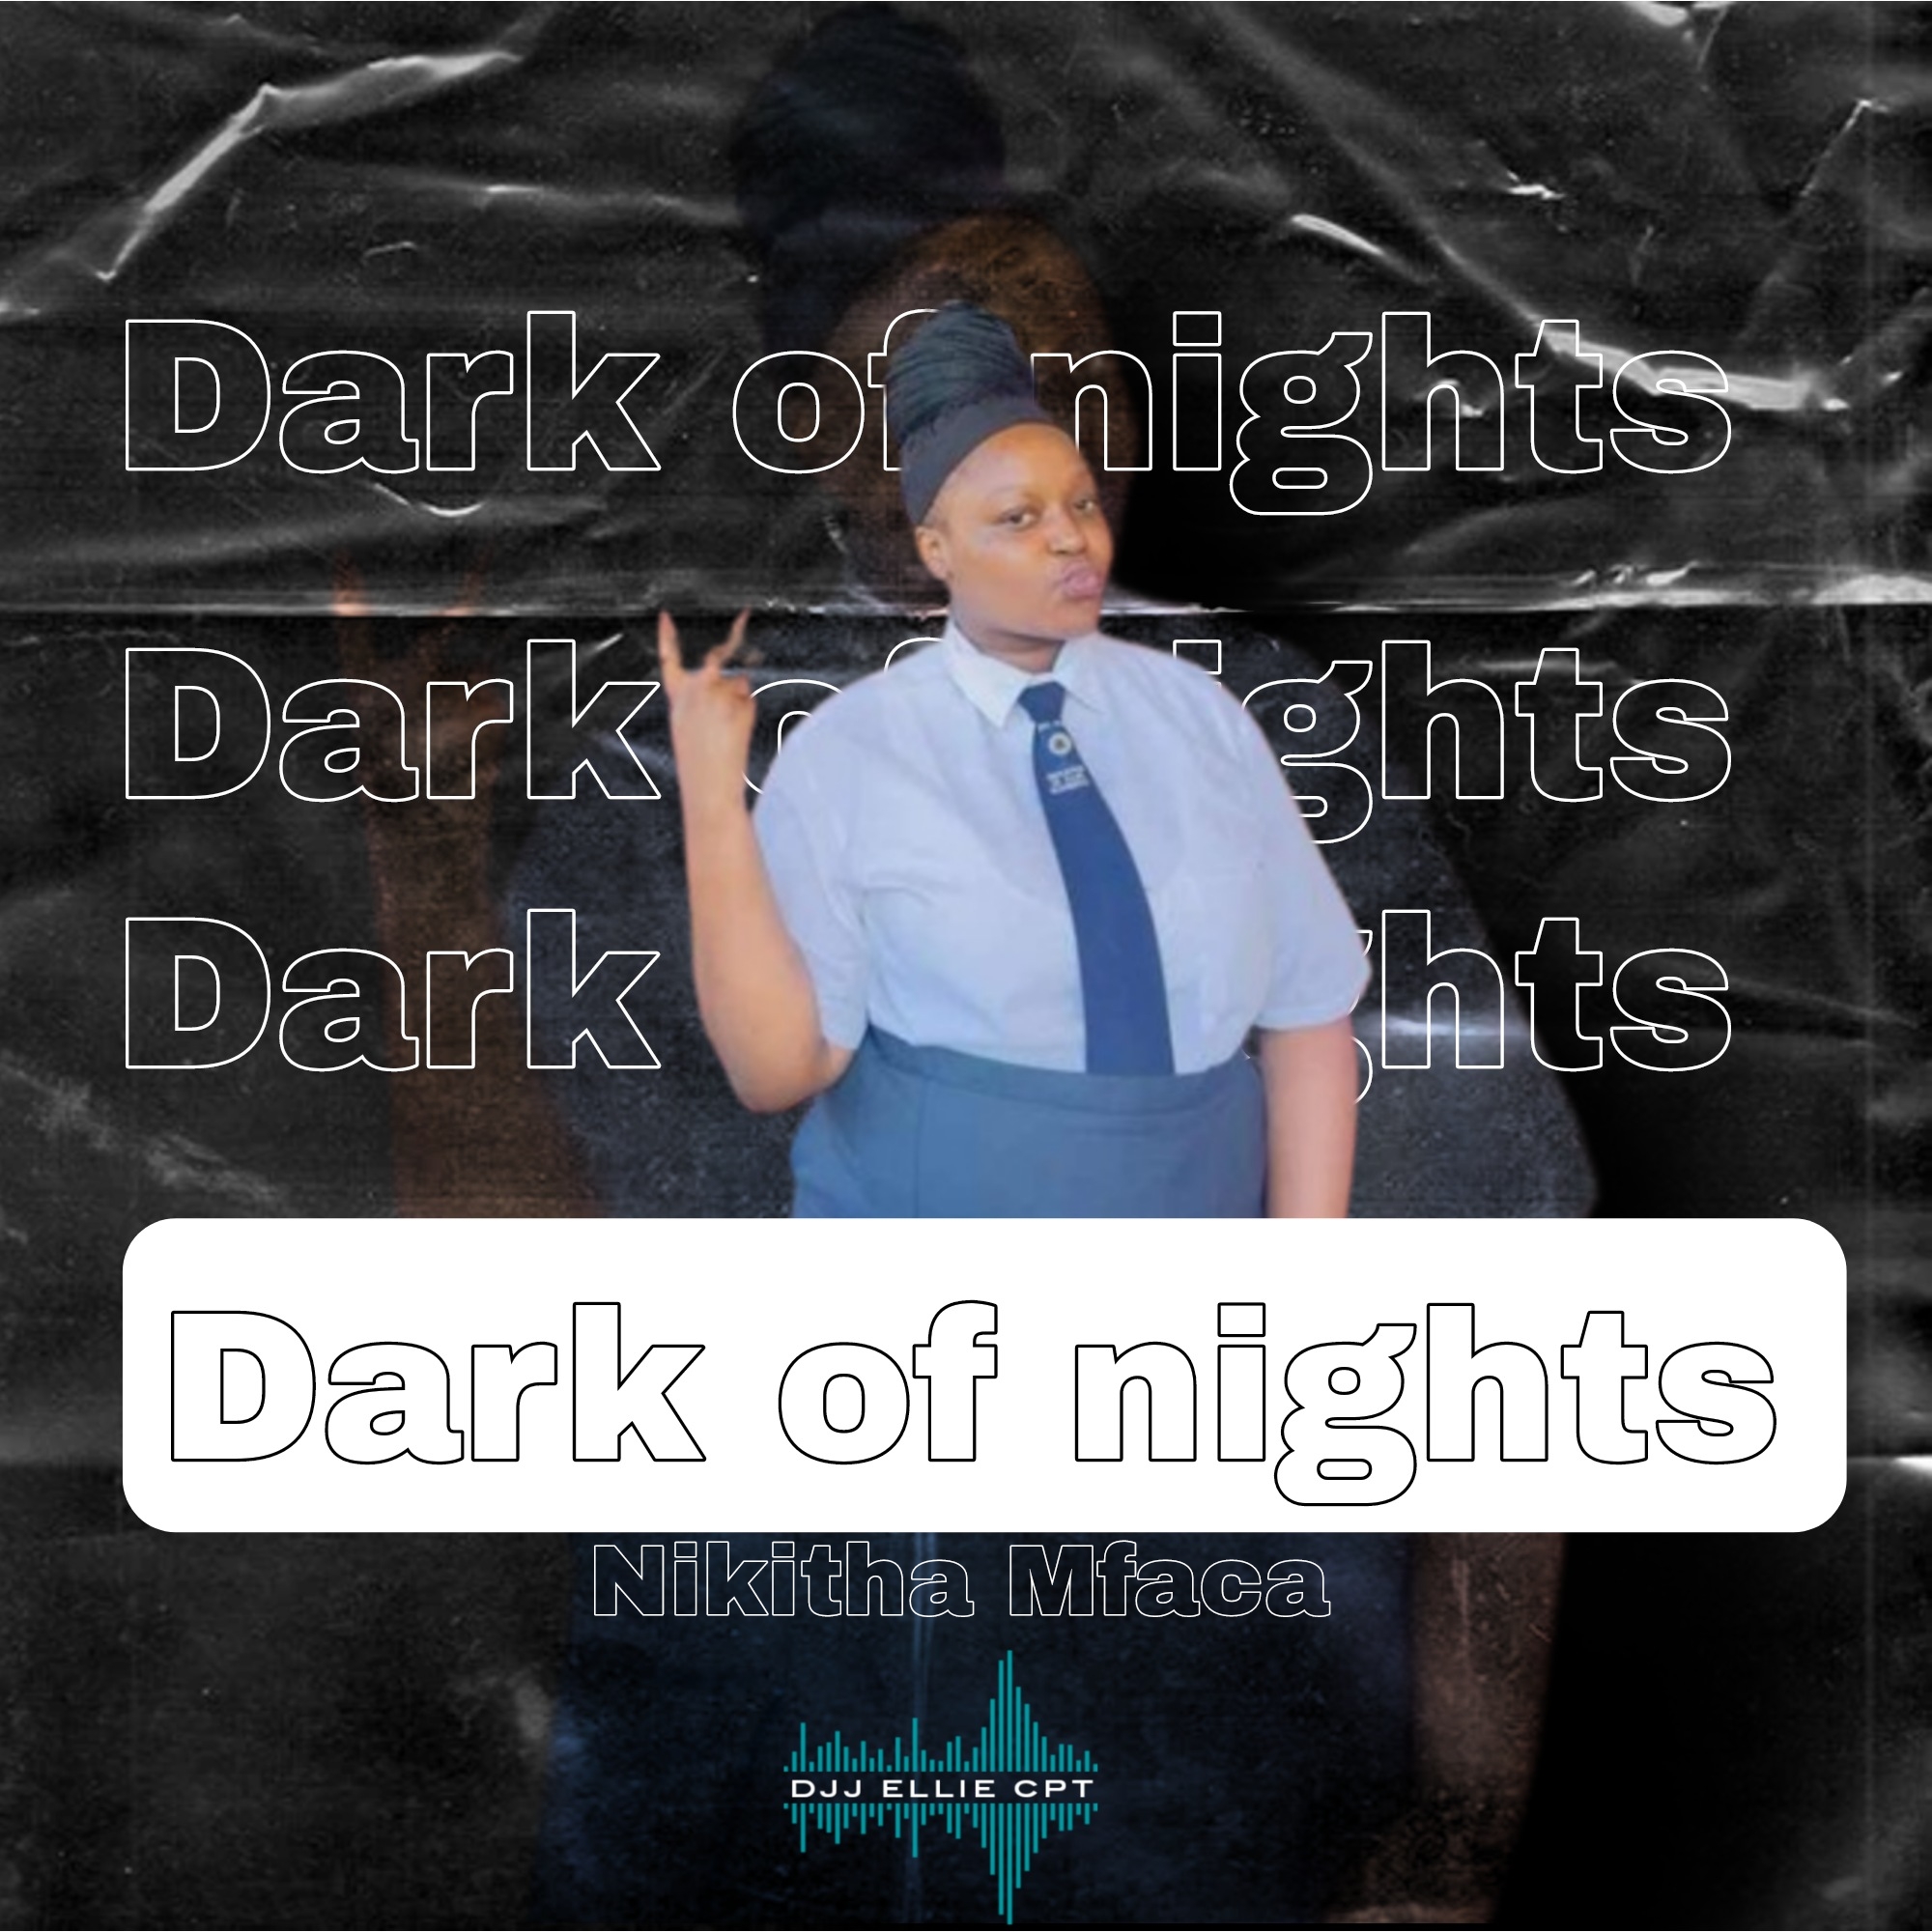 Dark of nights - DJJ Ellie Cpt x Nikitha Mfaca